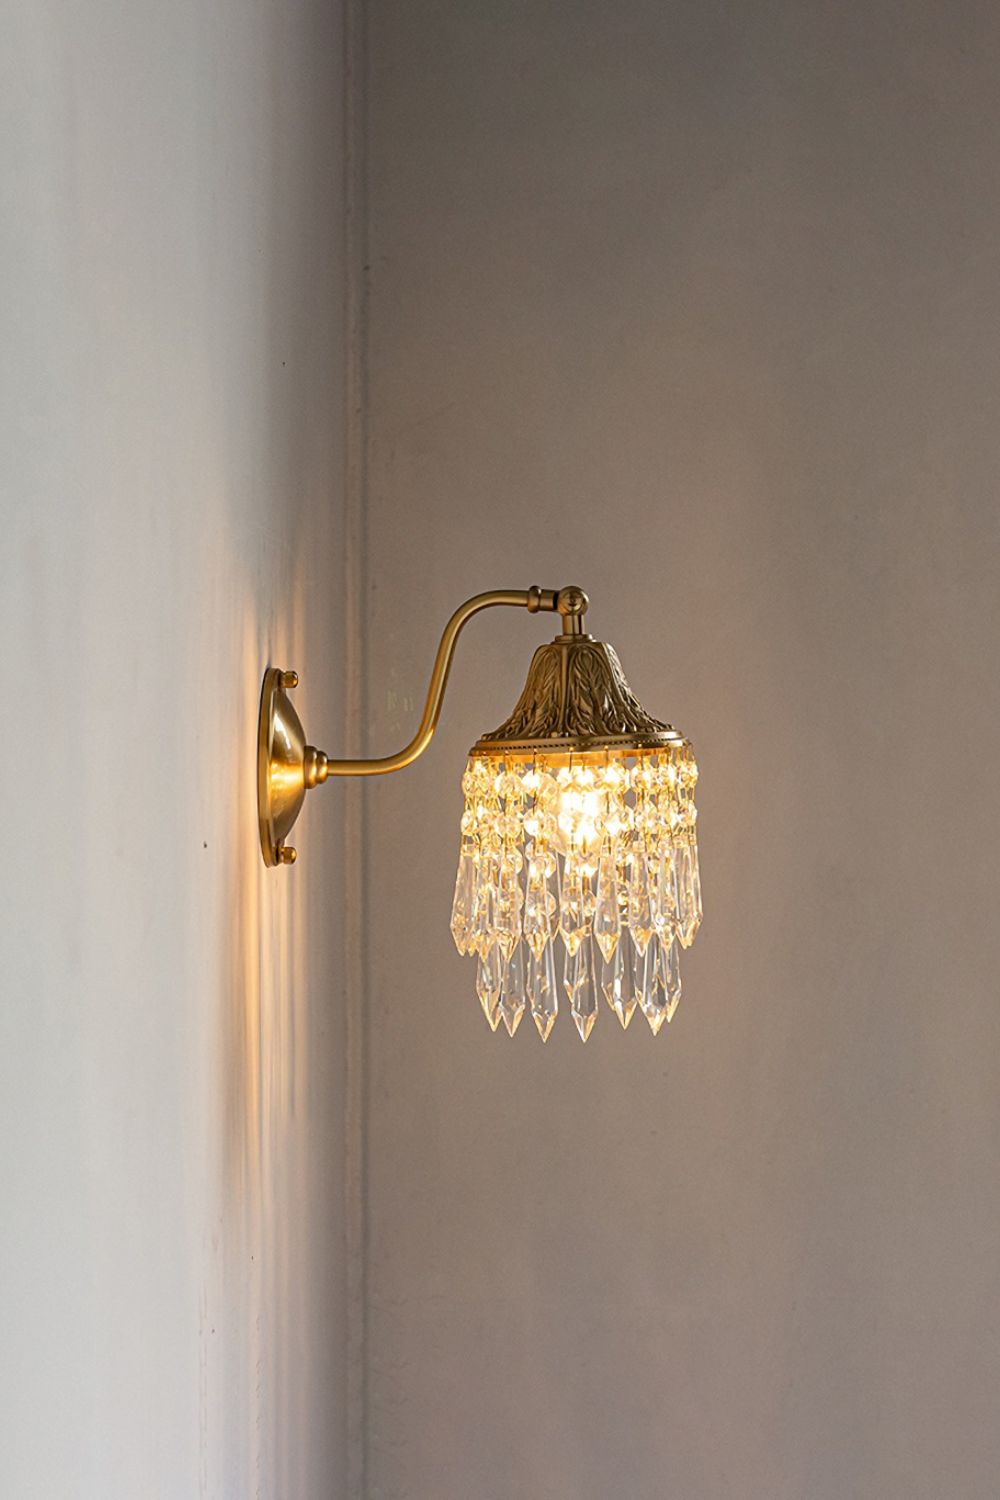 Vintage Tassel Wall Lamp - SamuLighting